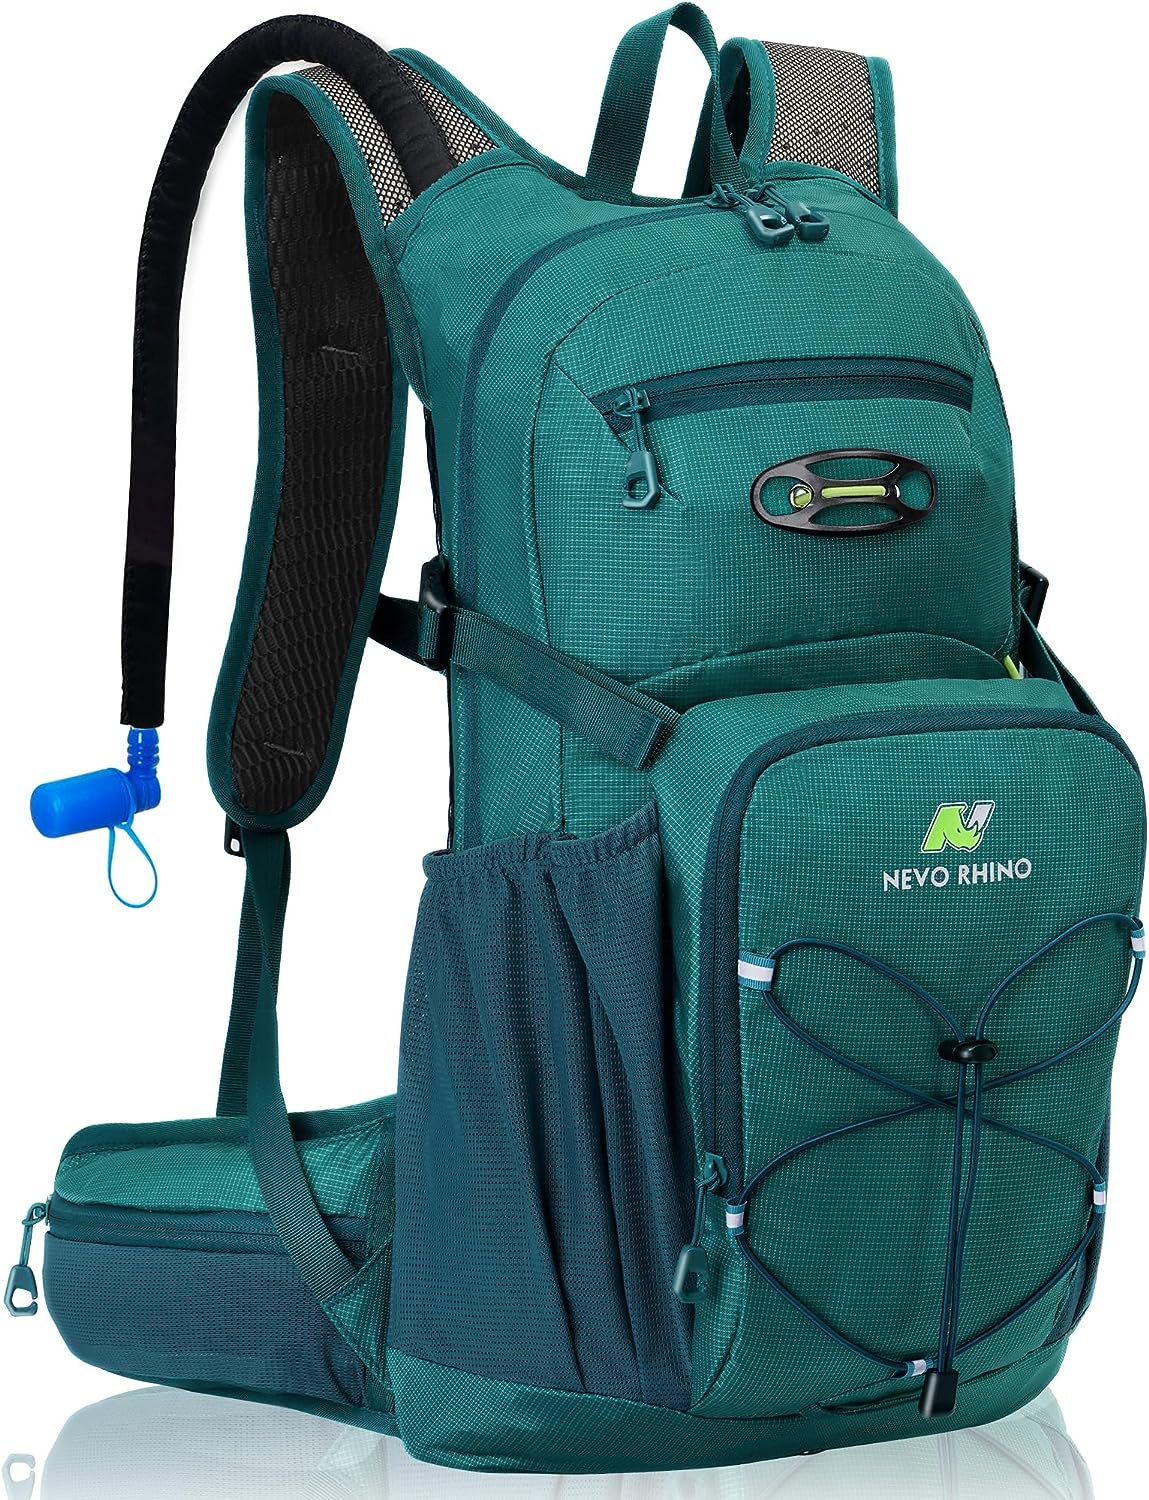 N NEVO RHINO Hydration Backpack Review